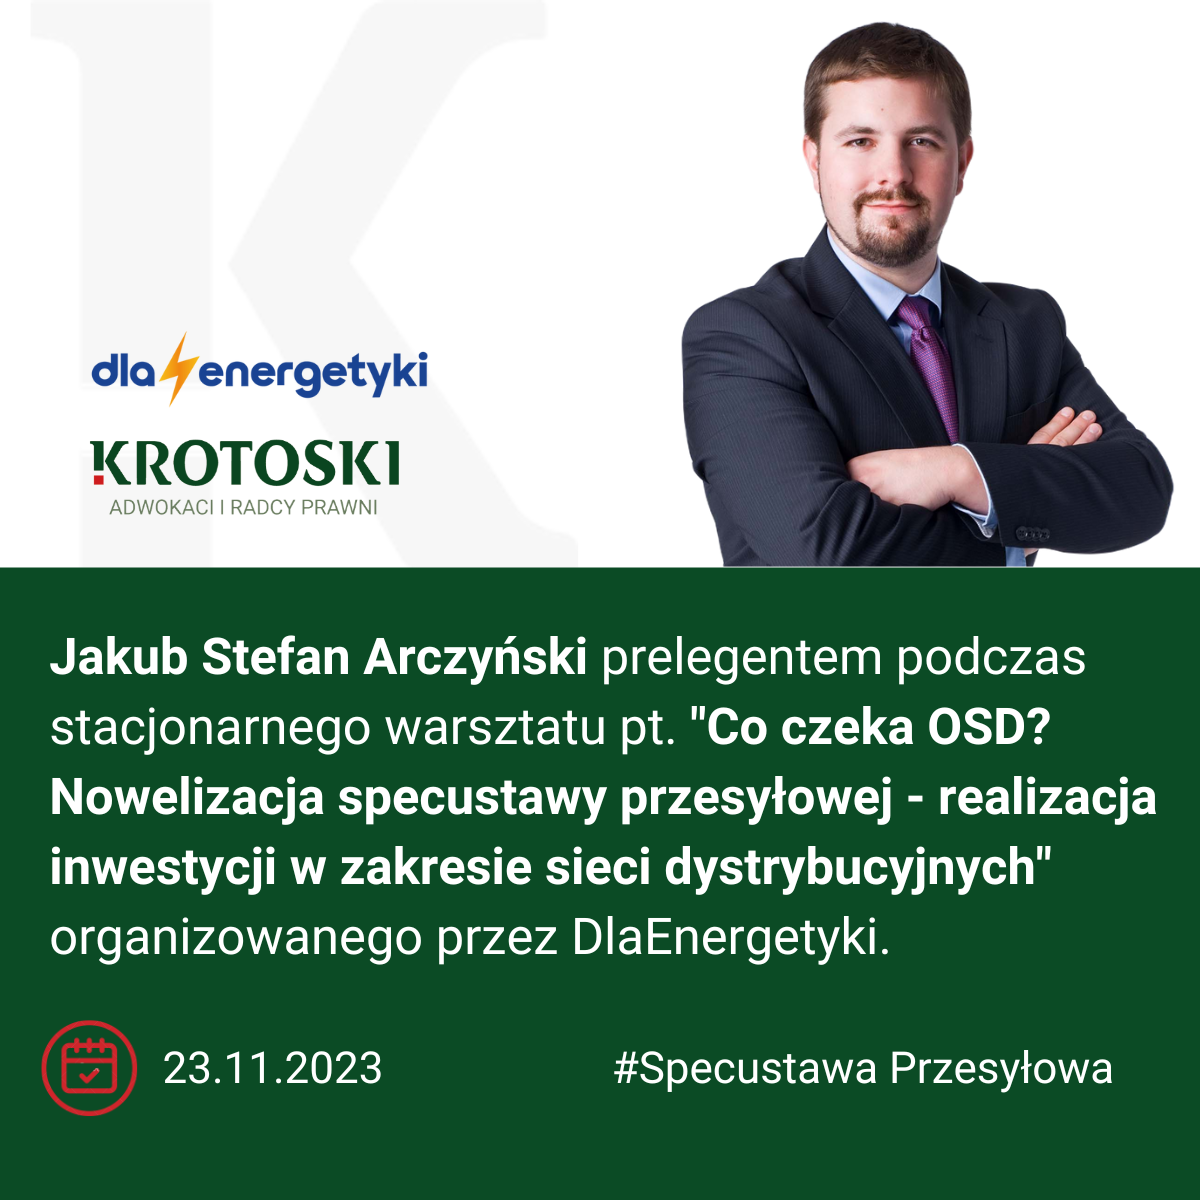 Jakub Stefan Arczyński prelegentem podczas warsztatu organizowanego przez DlaEnergetyki